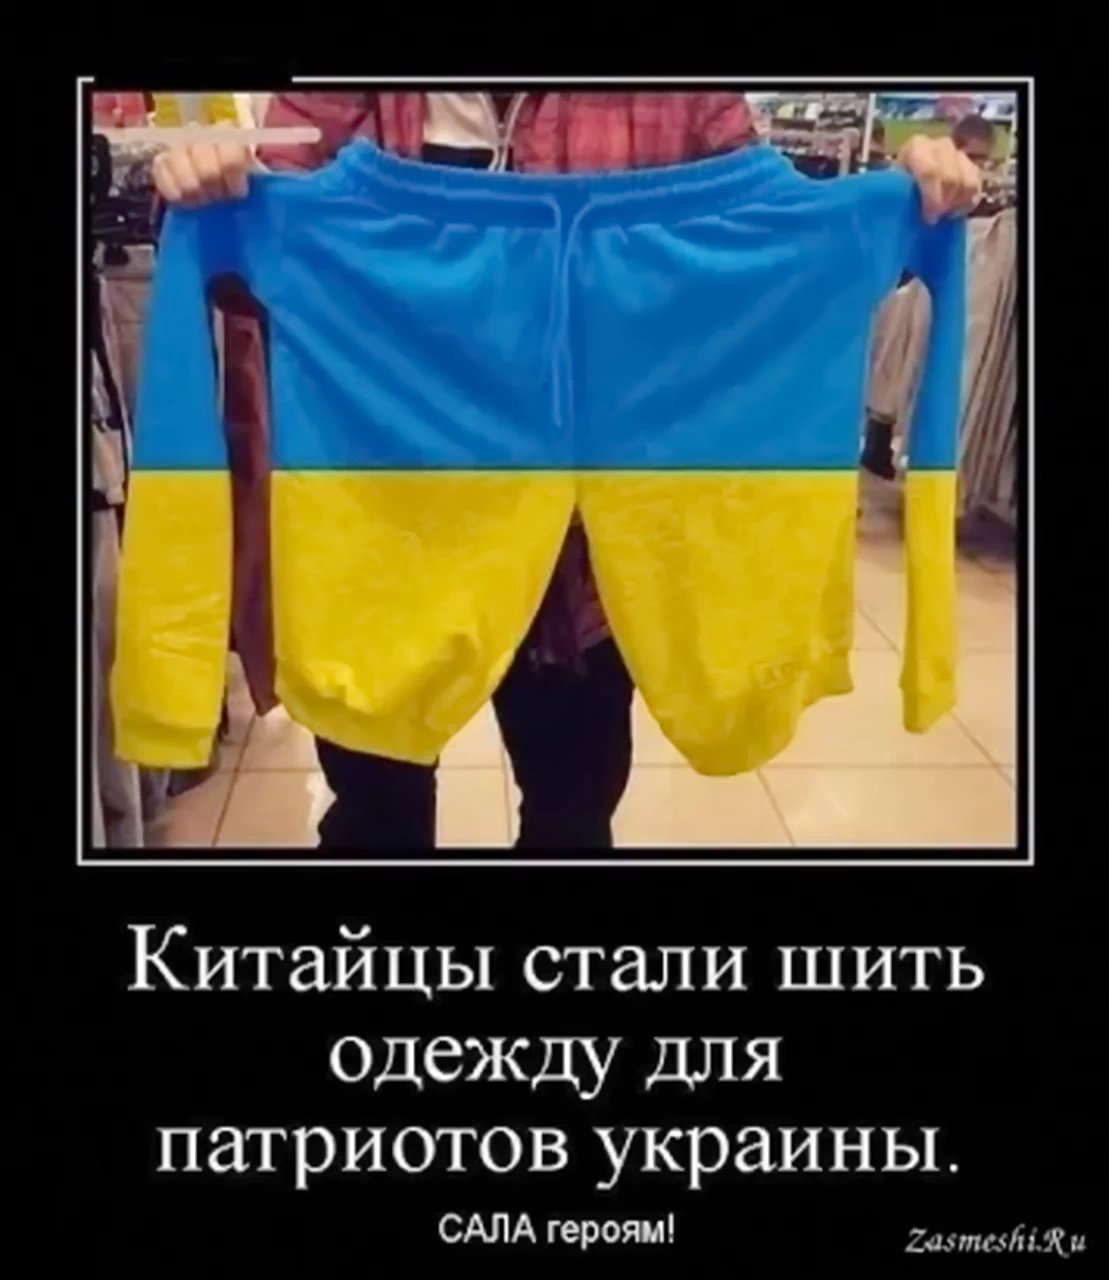 Украинцы смешно. Украинский флаг прикол. Смешные украинцы. Хохлы трусы. Смешные мужские трусы для Хохлов.